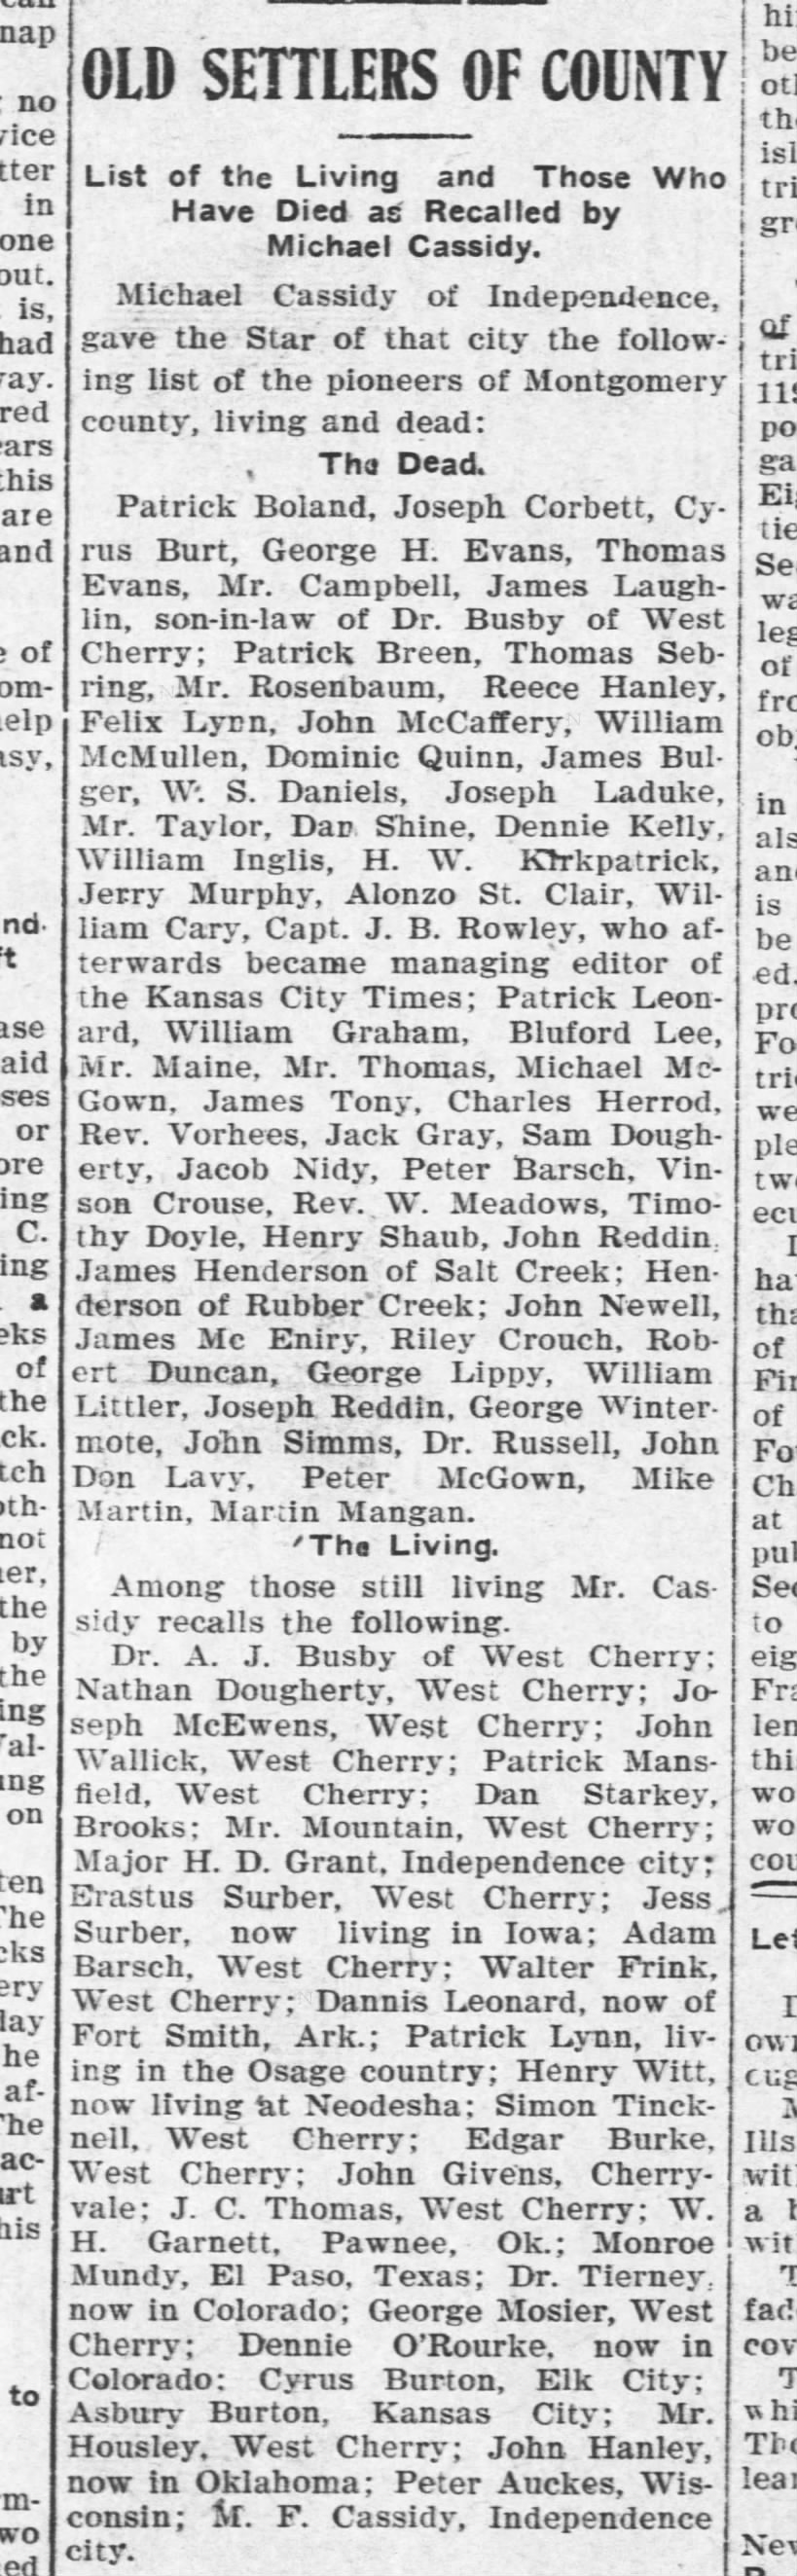 The Coffeyville Weekly Journal (Coffeyville, Kansas) 21 Sept 1906